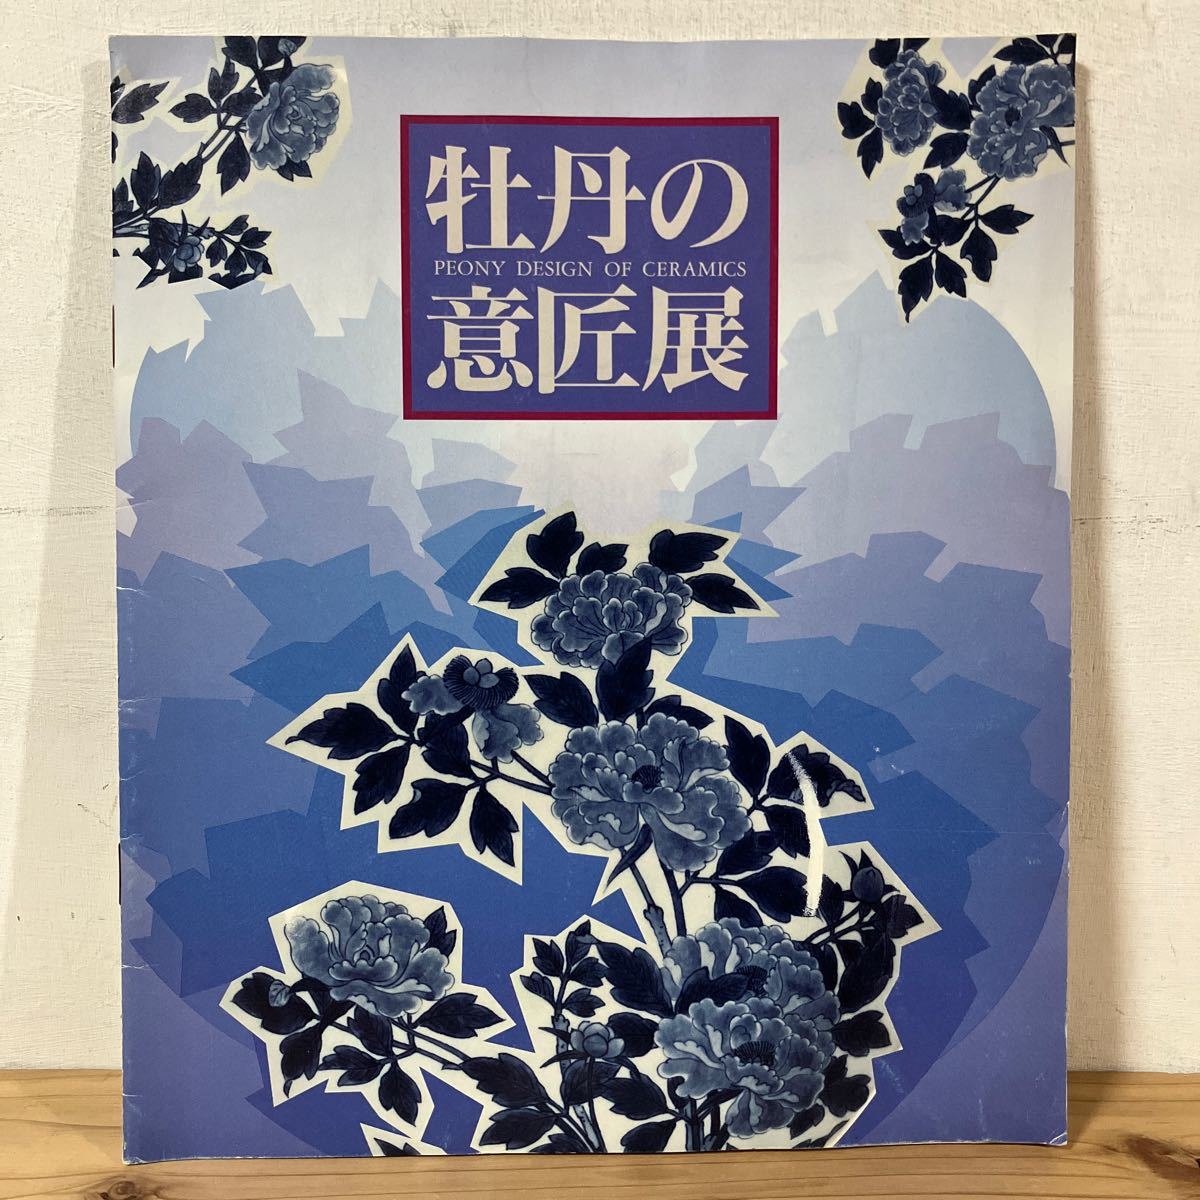 ホヲ○0110[牡丹の意匠展] 小図録 中国・朝鮮の牡丹文様焼物 中国陶磁 青磁 1990年の画像1